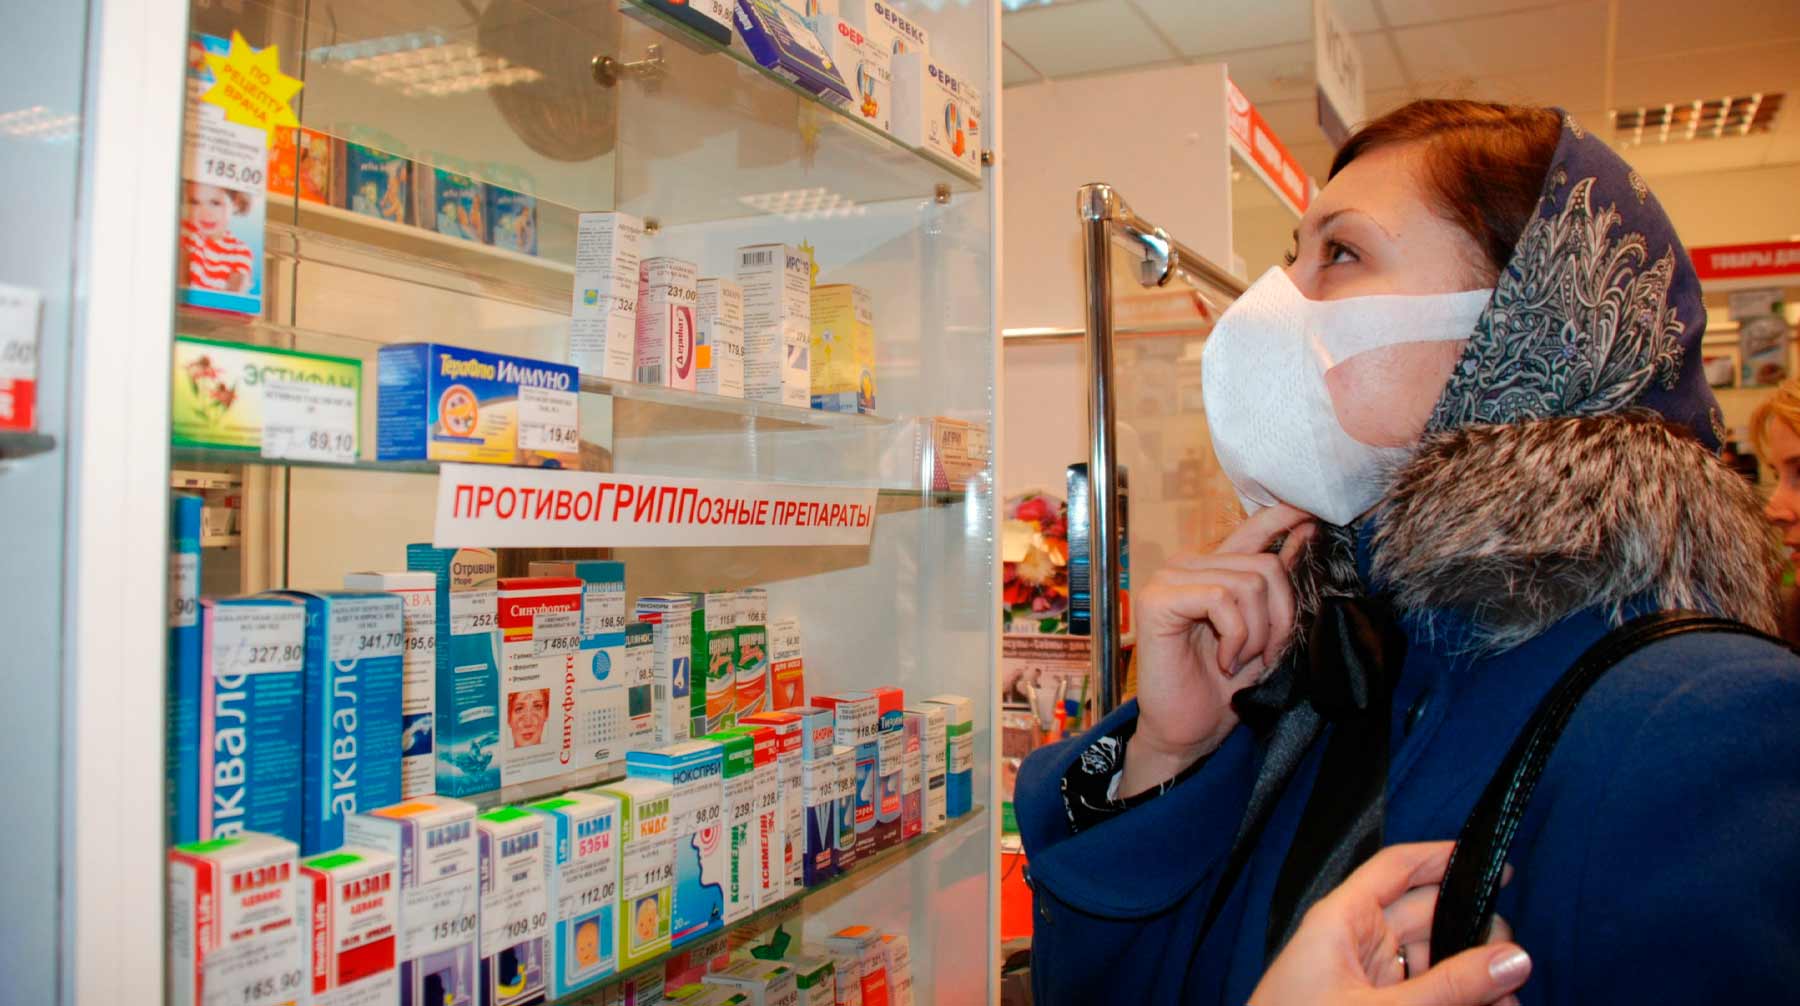 Инициатива позволит правительству на 90 дней установить предельно низкую цену на препараты и медицинские материалы по стране Фото: © Global Look Press / Alexander Legky